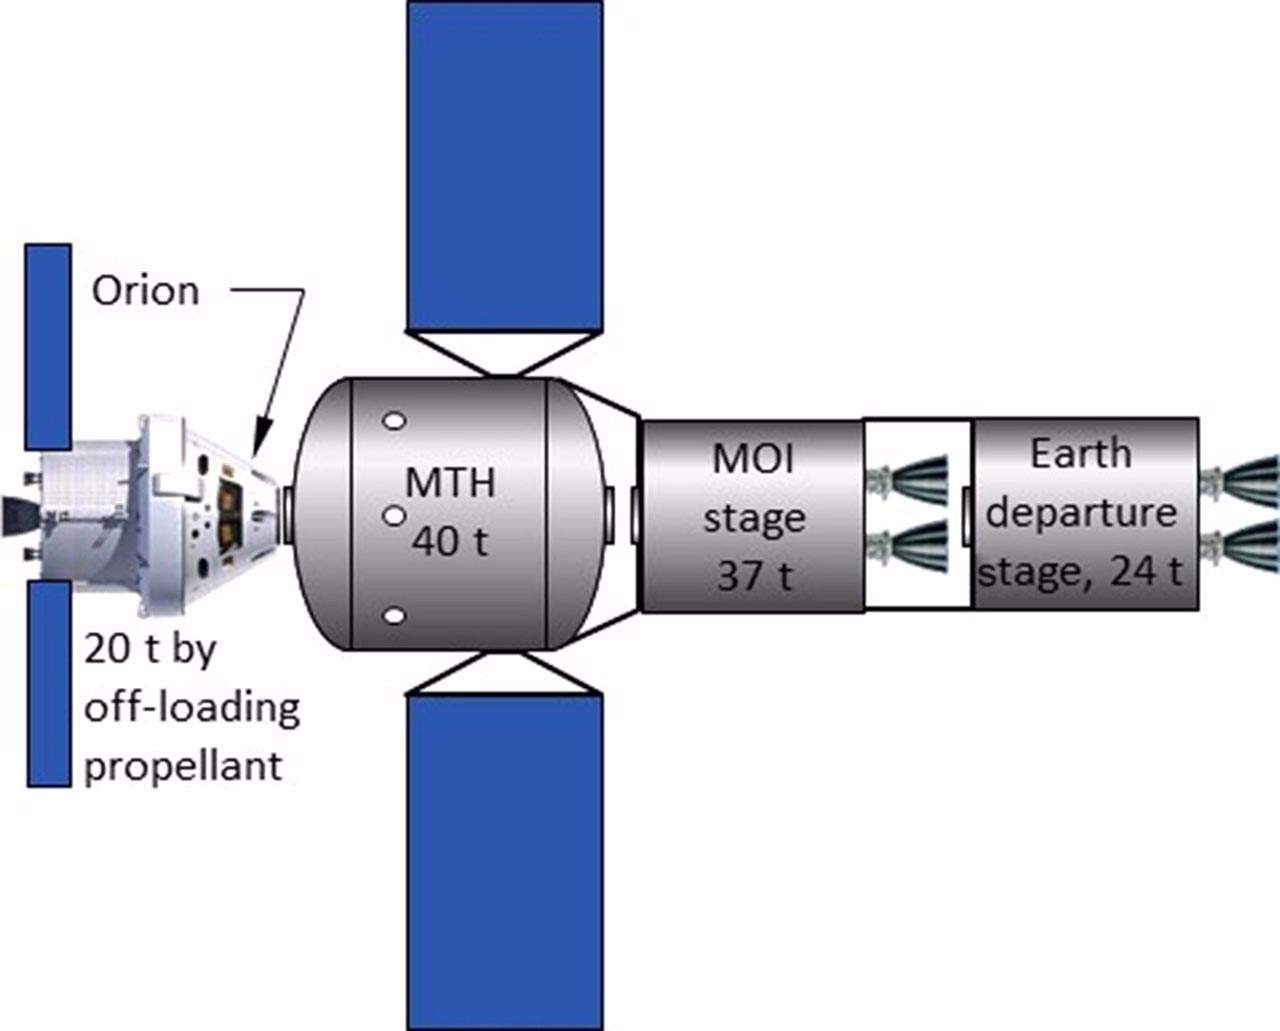 Ejemplo conceptual de vehículo de misión tripulada a Marte / Imagen:  Journal ol Spacecrafts and Rockets